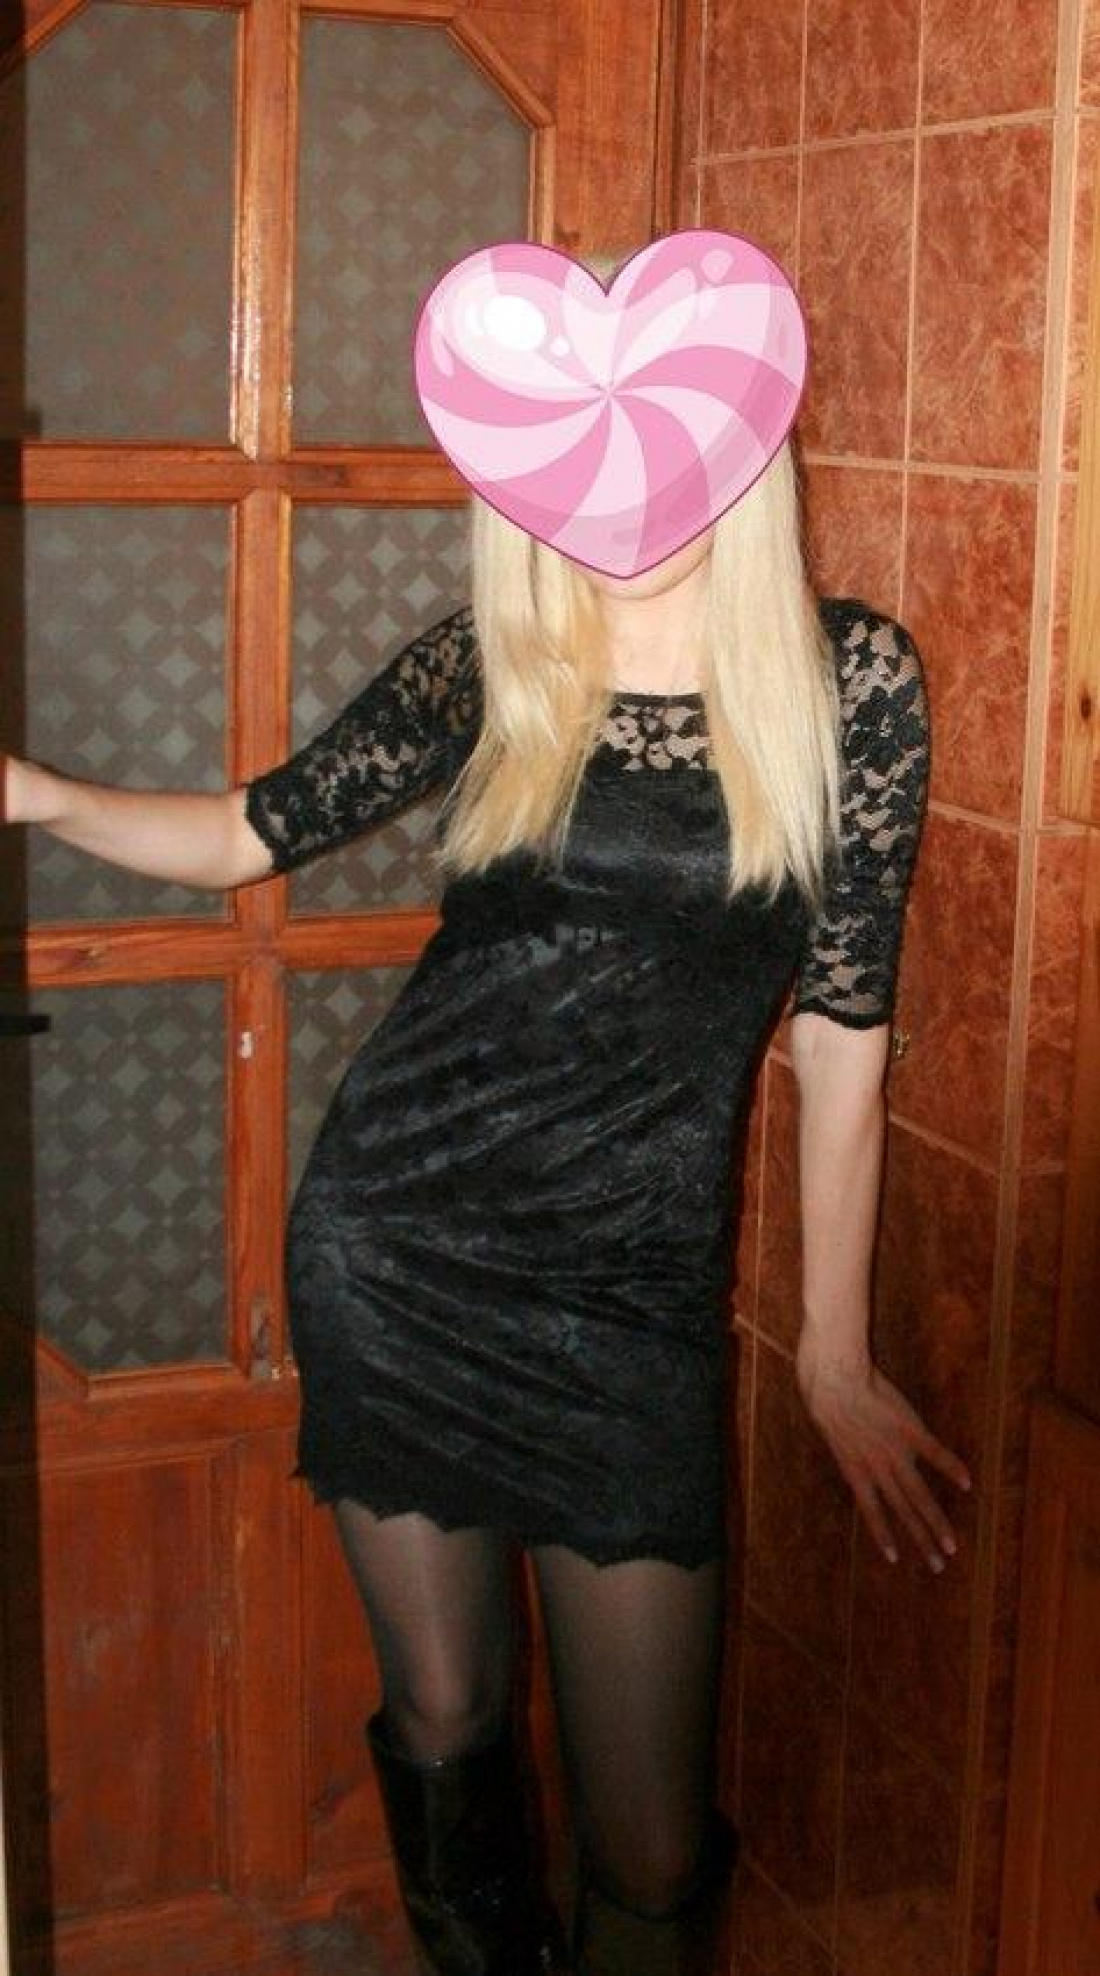 Карина: проститутки индивидуалки в Казани